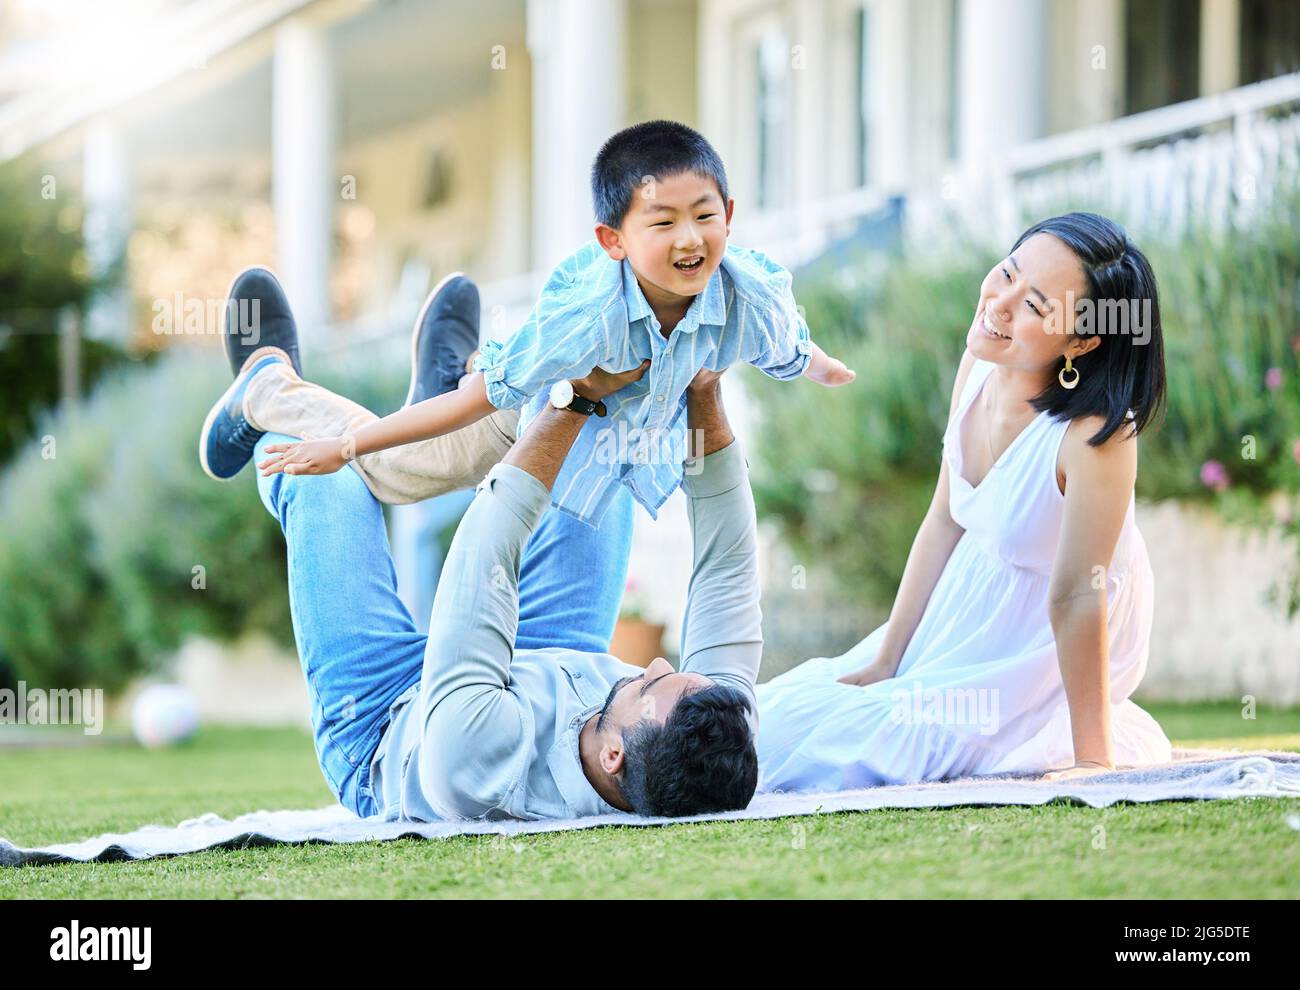 Momentos divertidos, momentos familiares. Foto de una familia joven relajándose en su jardín exterior. Foto de stock